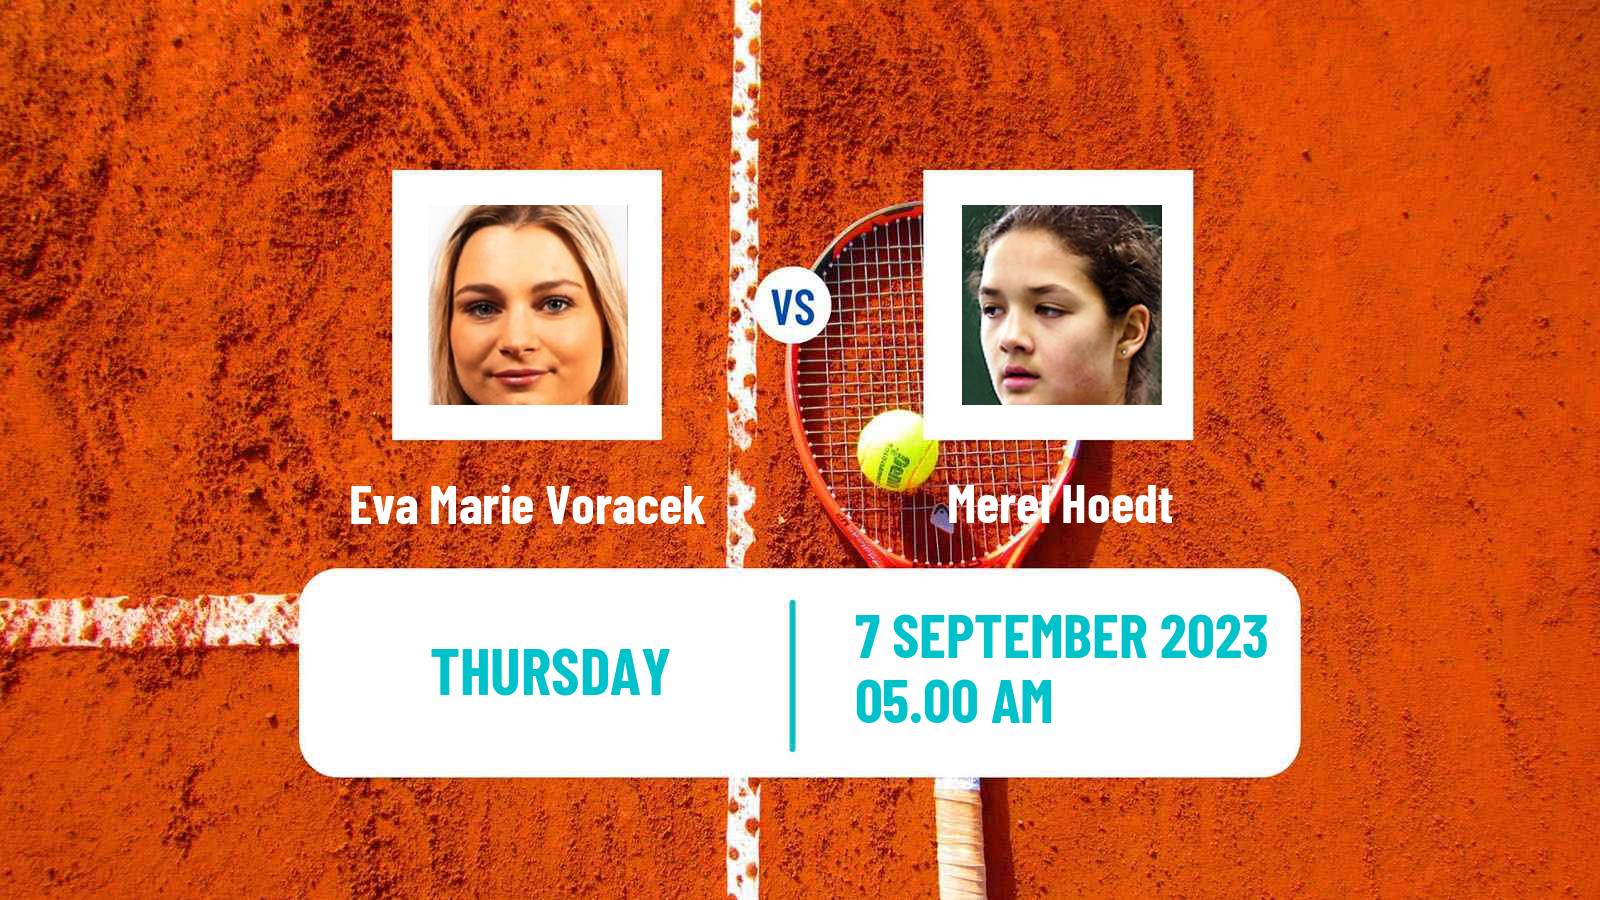 Tennis ITF W15 Haren Women Eva Marie Voracek - Merel Hoedt